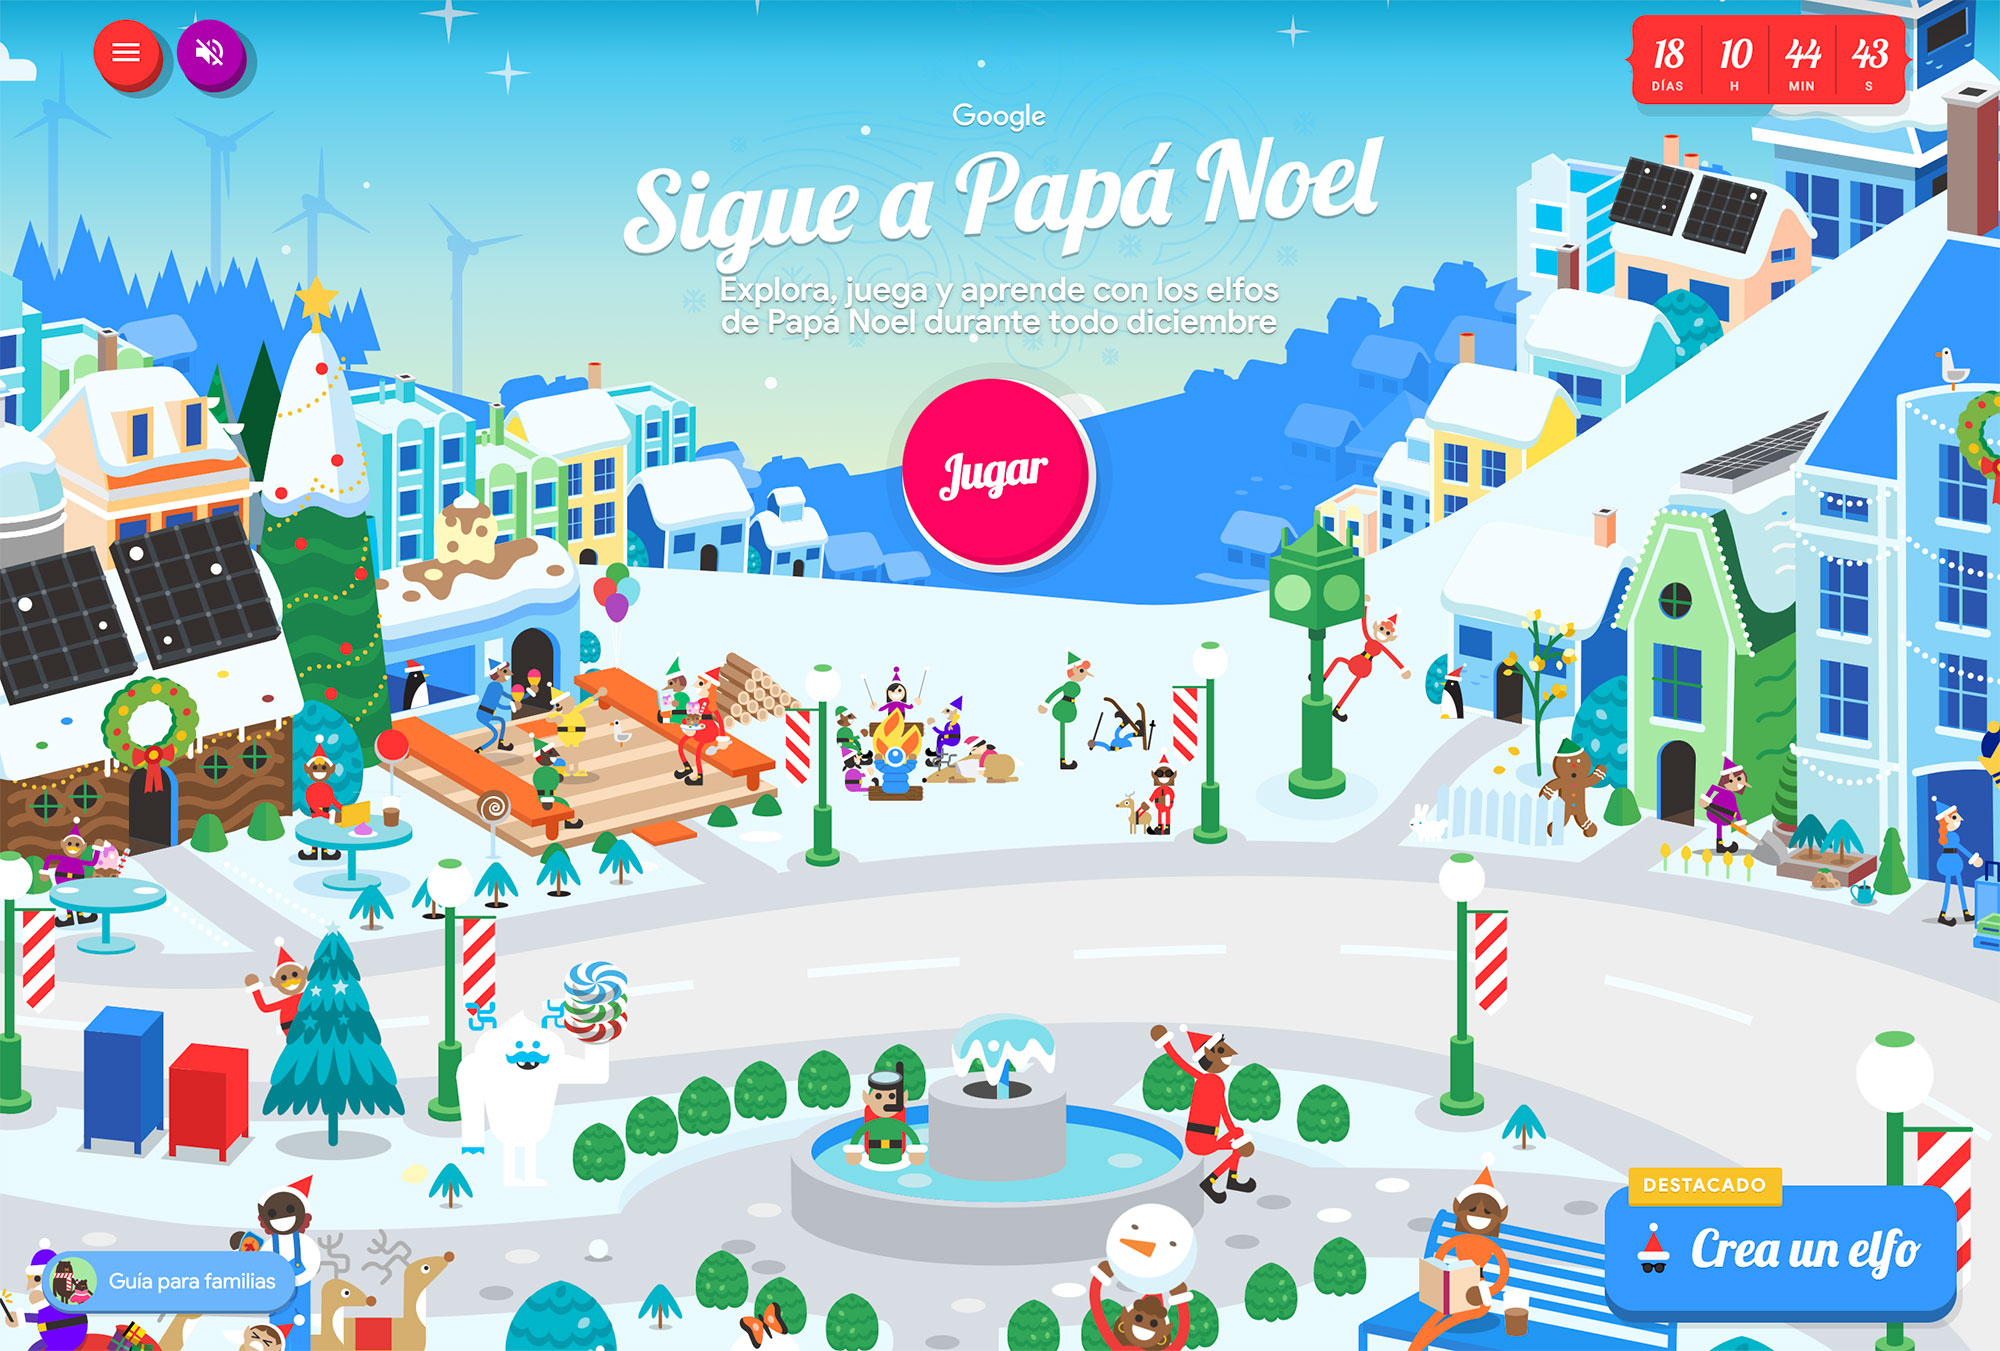 Santa Tracker, sigue en tiempo real a Papá Noel gracias a Google el día de Navidad